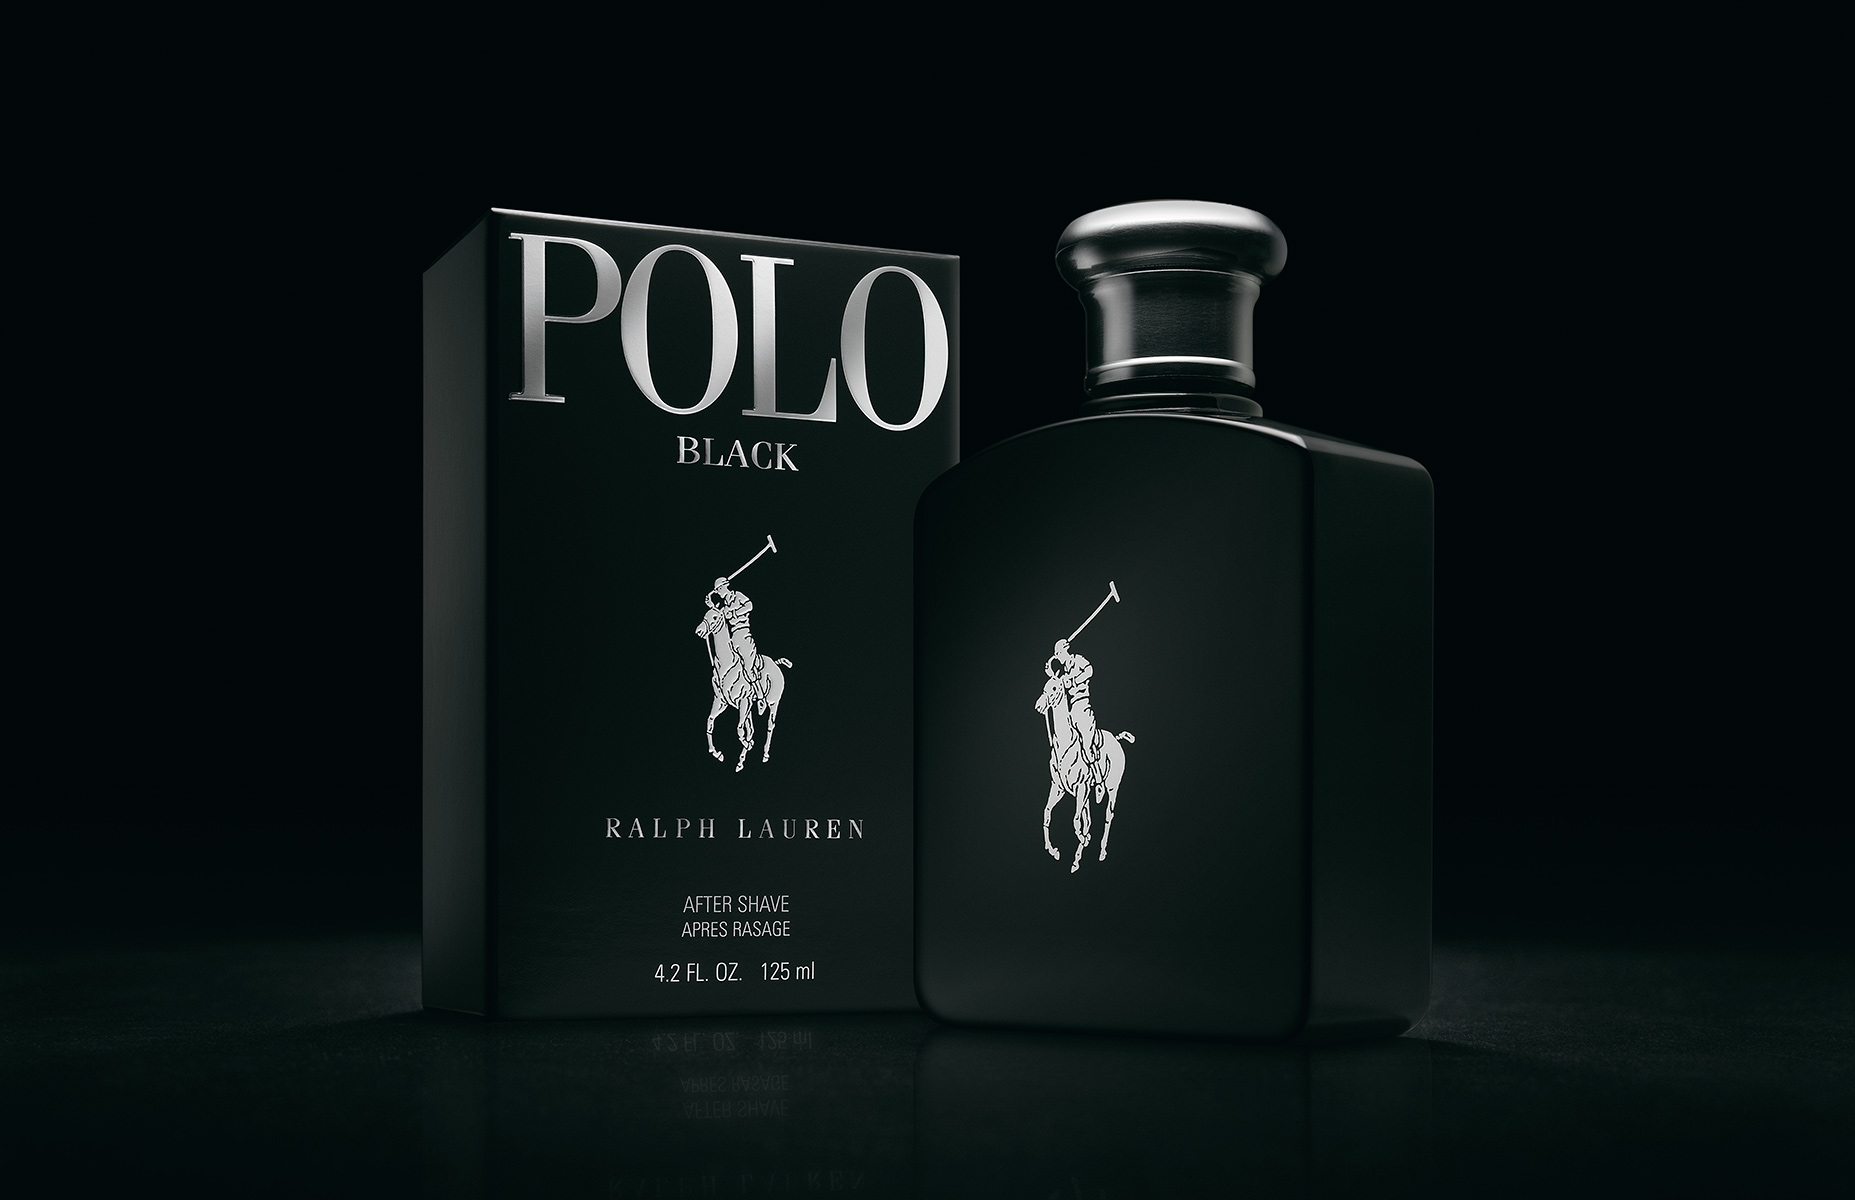 POLO-BLACK-bottle+box